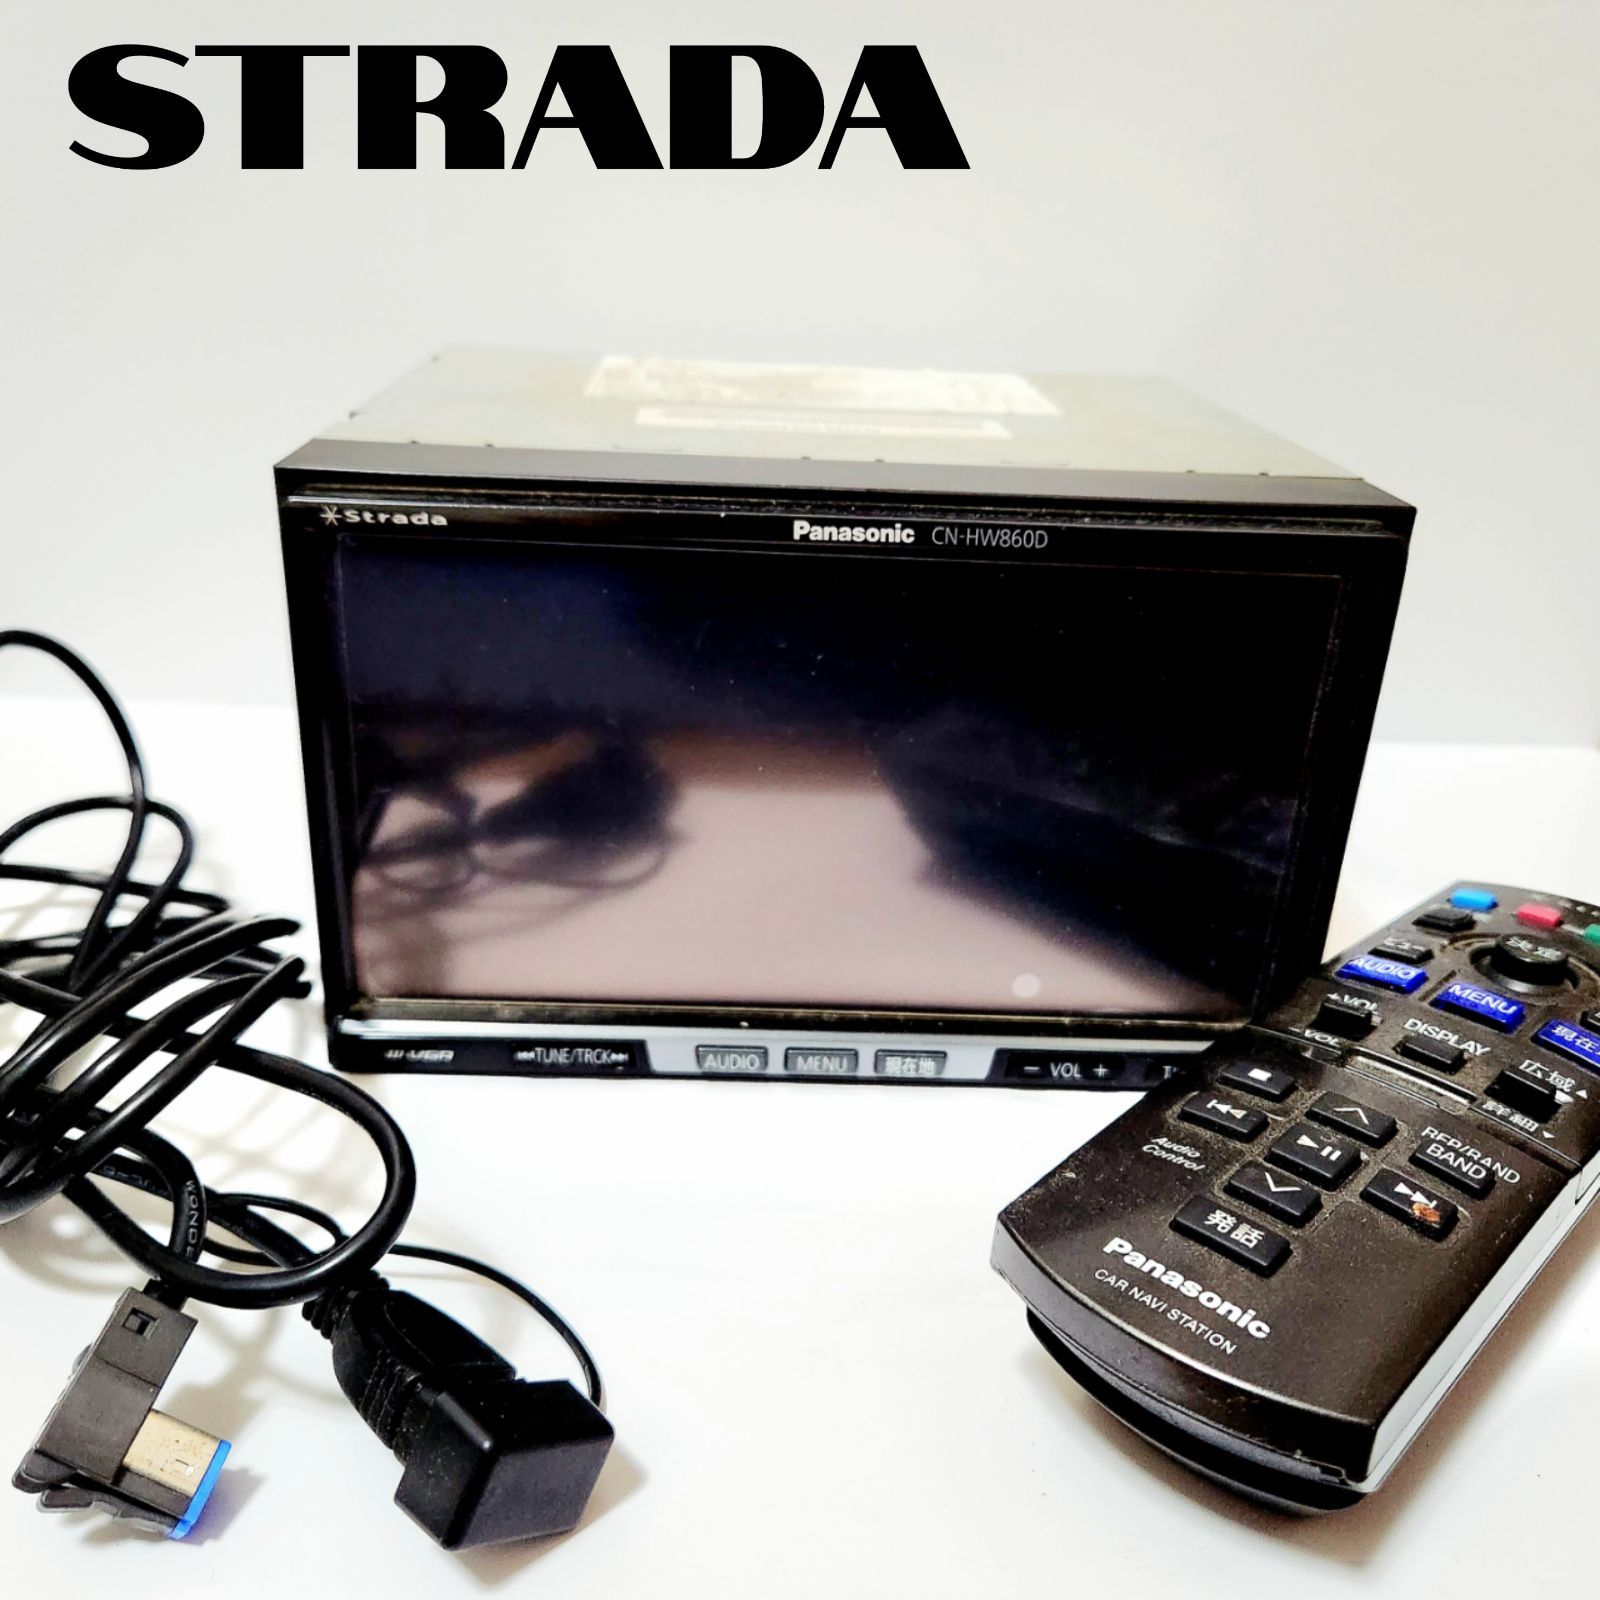 の販売★Panasonic Strada HDDナビ CN-HW860 DVDビデオ再生可・CD録音再生・USB・4×4地デジTV内蔵・フィルムアンテナ新品★状態良好 HDDナビ